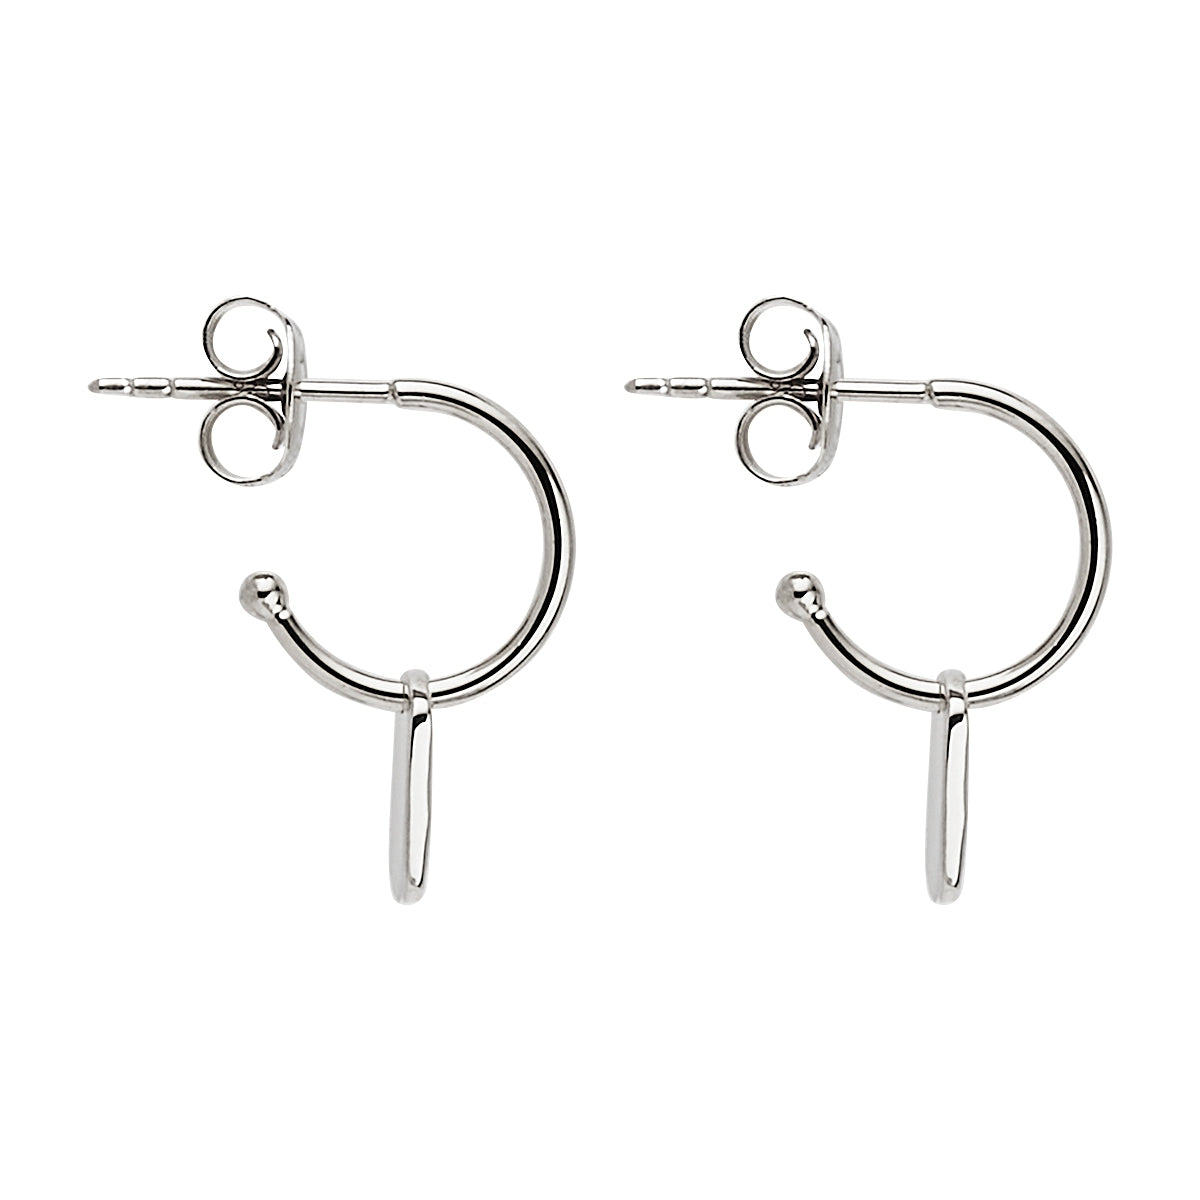 NAJO Tigger Silver Earrings E6544